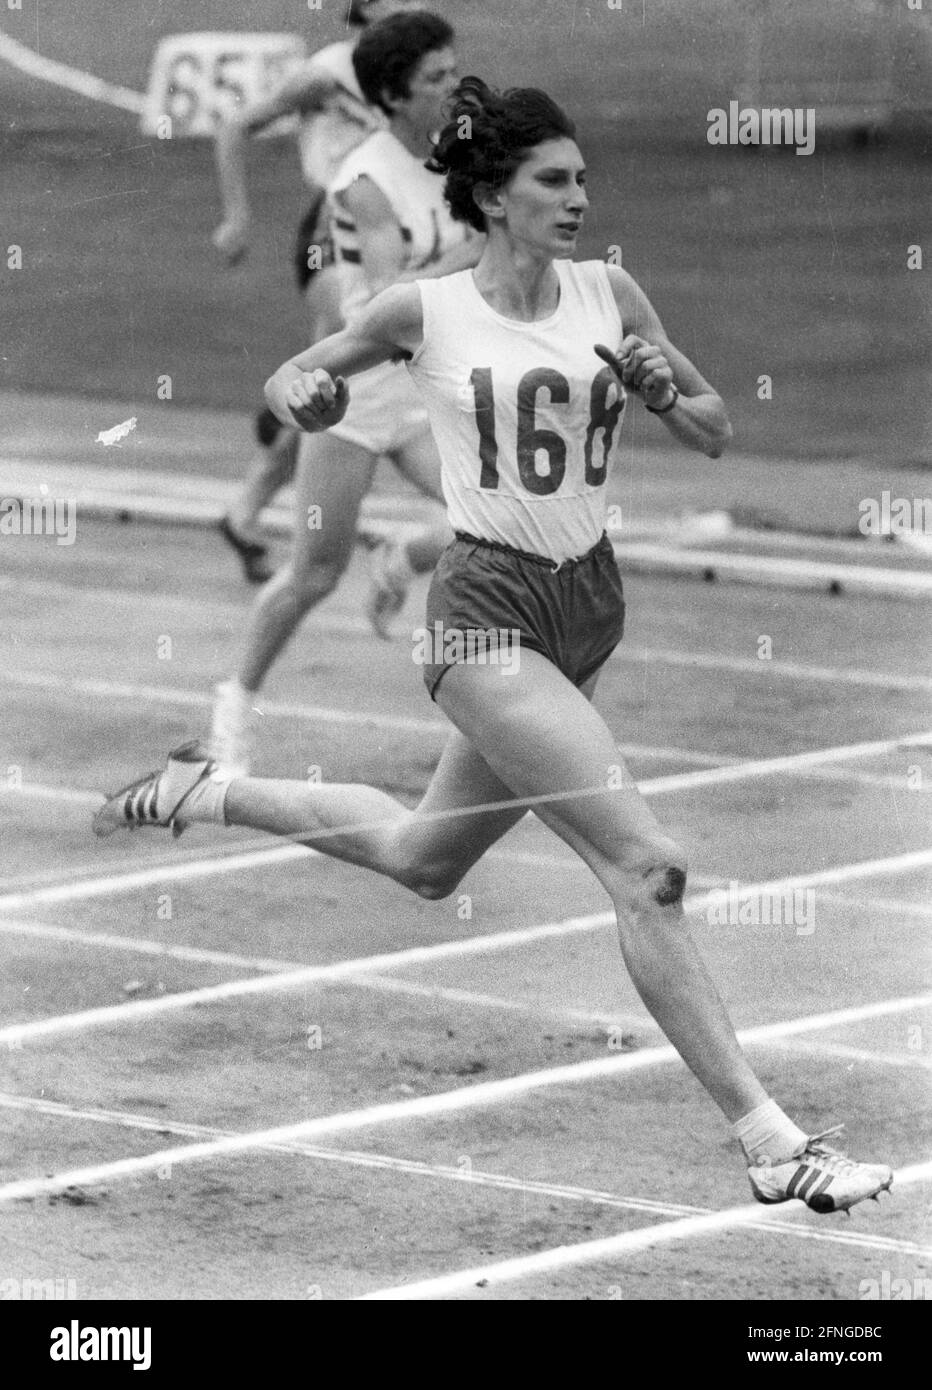 Jeux olympiques d'été à Tokyo 1964. Athlétisme: 200m femmes, Irena Kirszenstein plus tard Szewinska en action. Rec. 19.10.1964. [traduction automatique] Banque D'Images